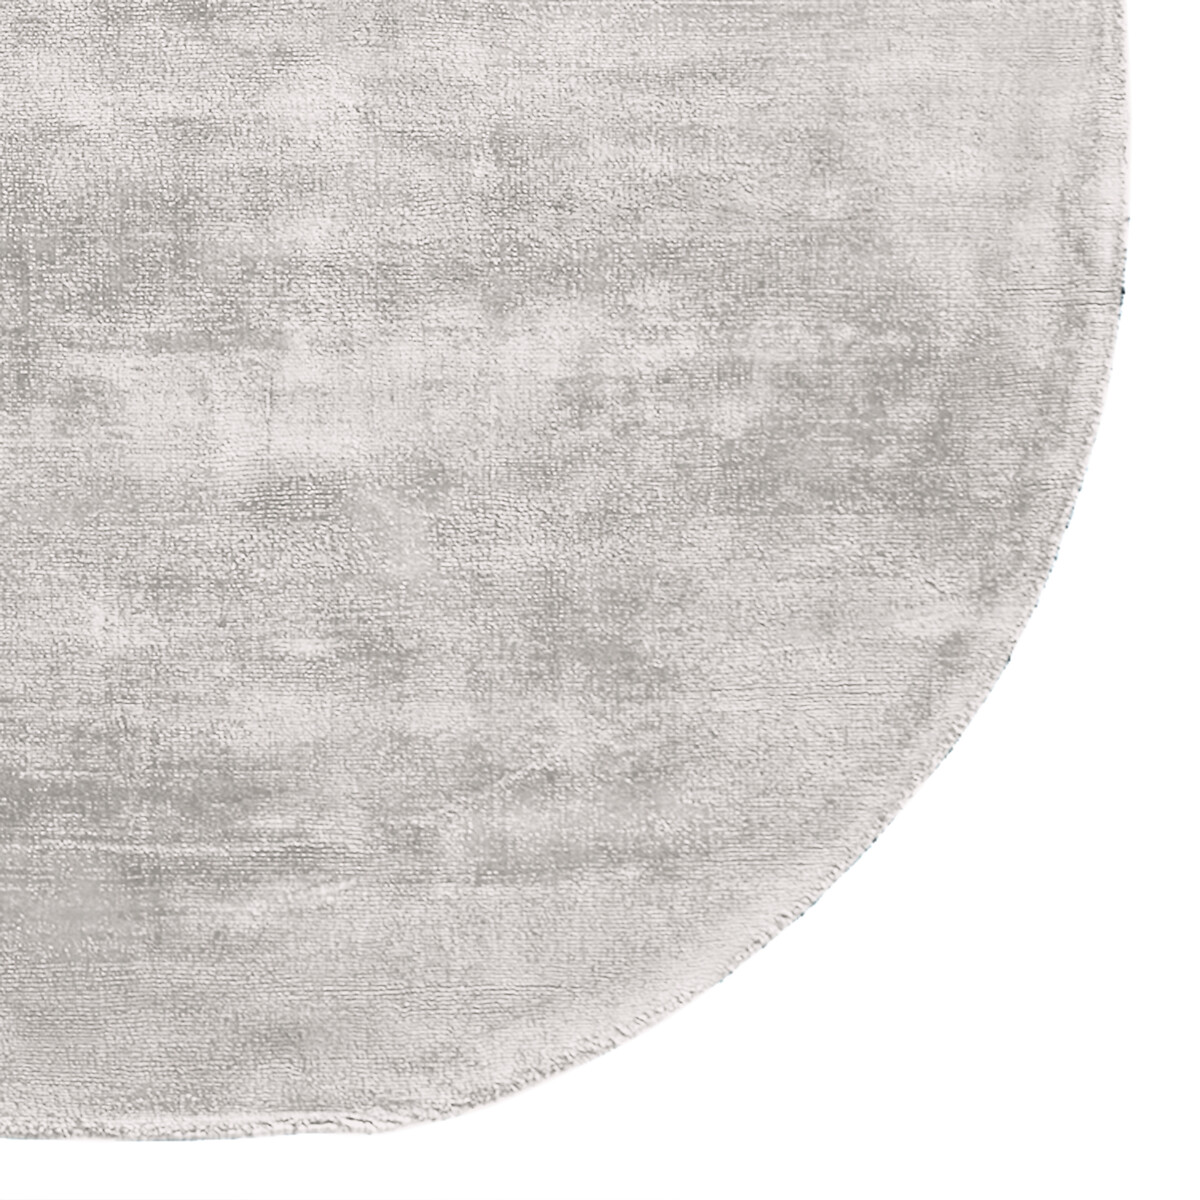 Ковер LaRedoute Квадратный связанный вручную из 100 вискозы Used единый размер серый - фото 3